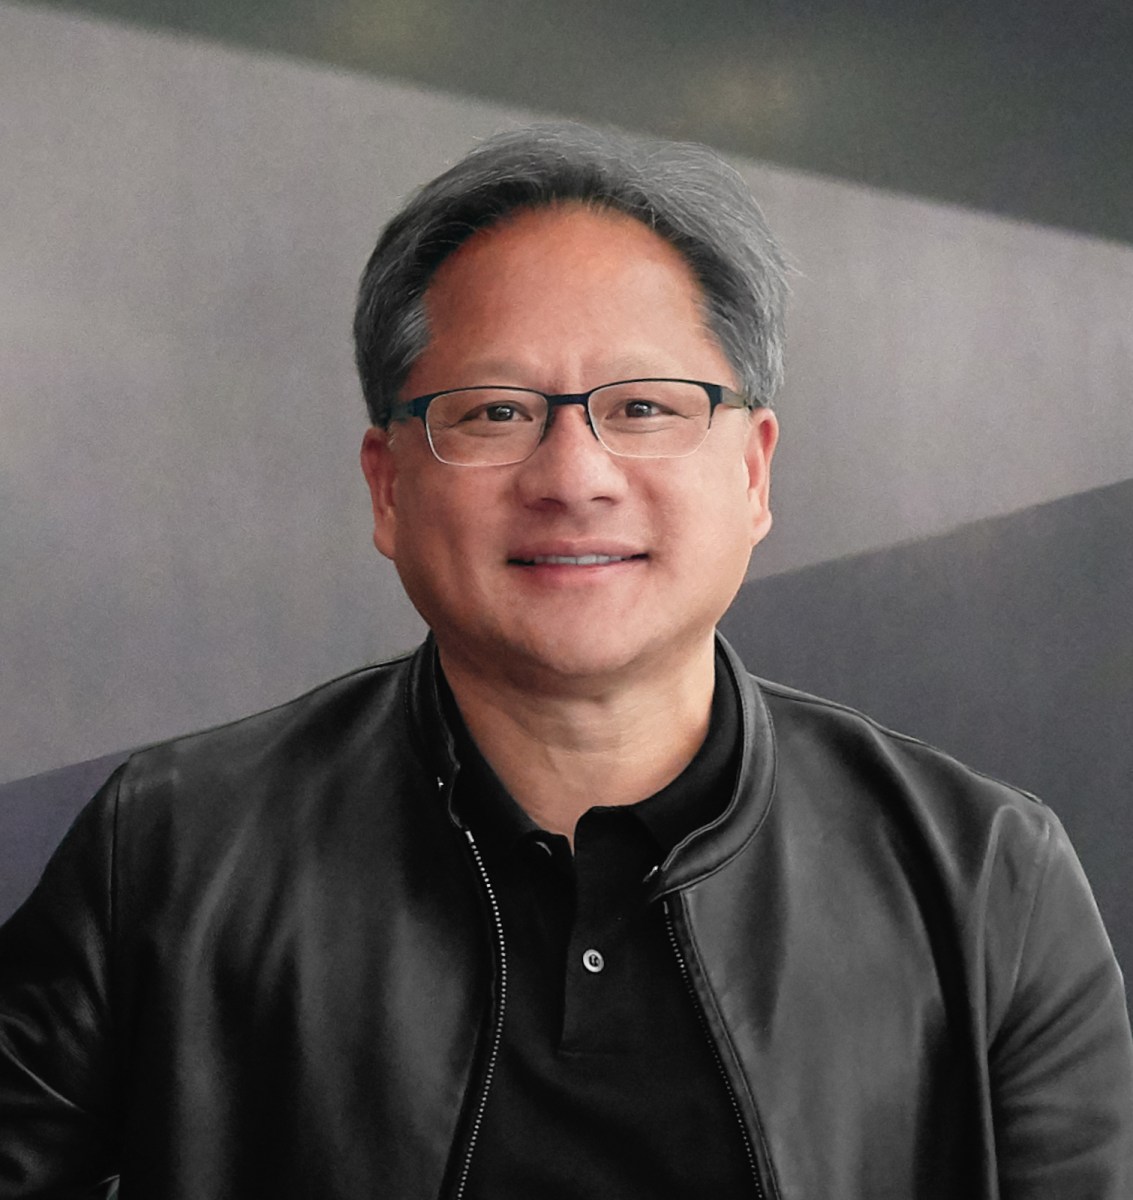 تم الإعلان عن جميع أخبار Nvidia بواسطة Jensen Huang في Computex